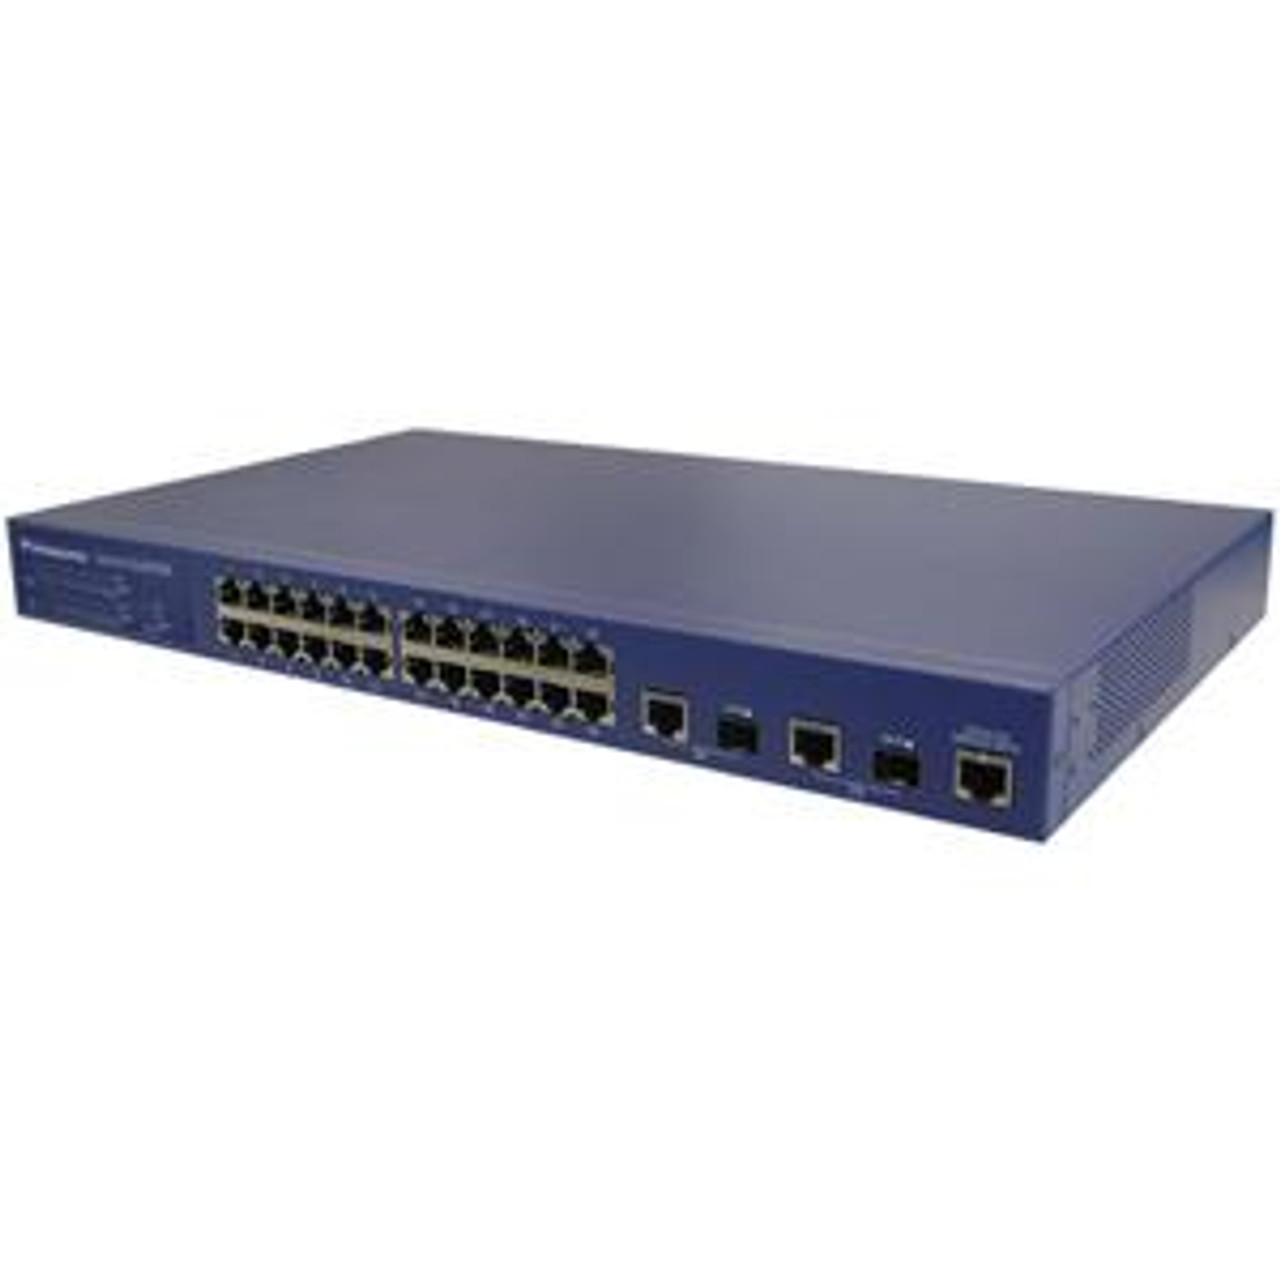 MN23249K Panasonic PoE Ethernet Switch 26 Ports Manageable 24 x POE 2 x Expansion Slots 10/100/1000Base-T, 10/100Base-TX PoE Ports (Refurbished)